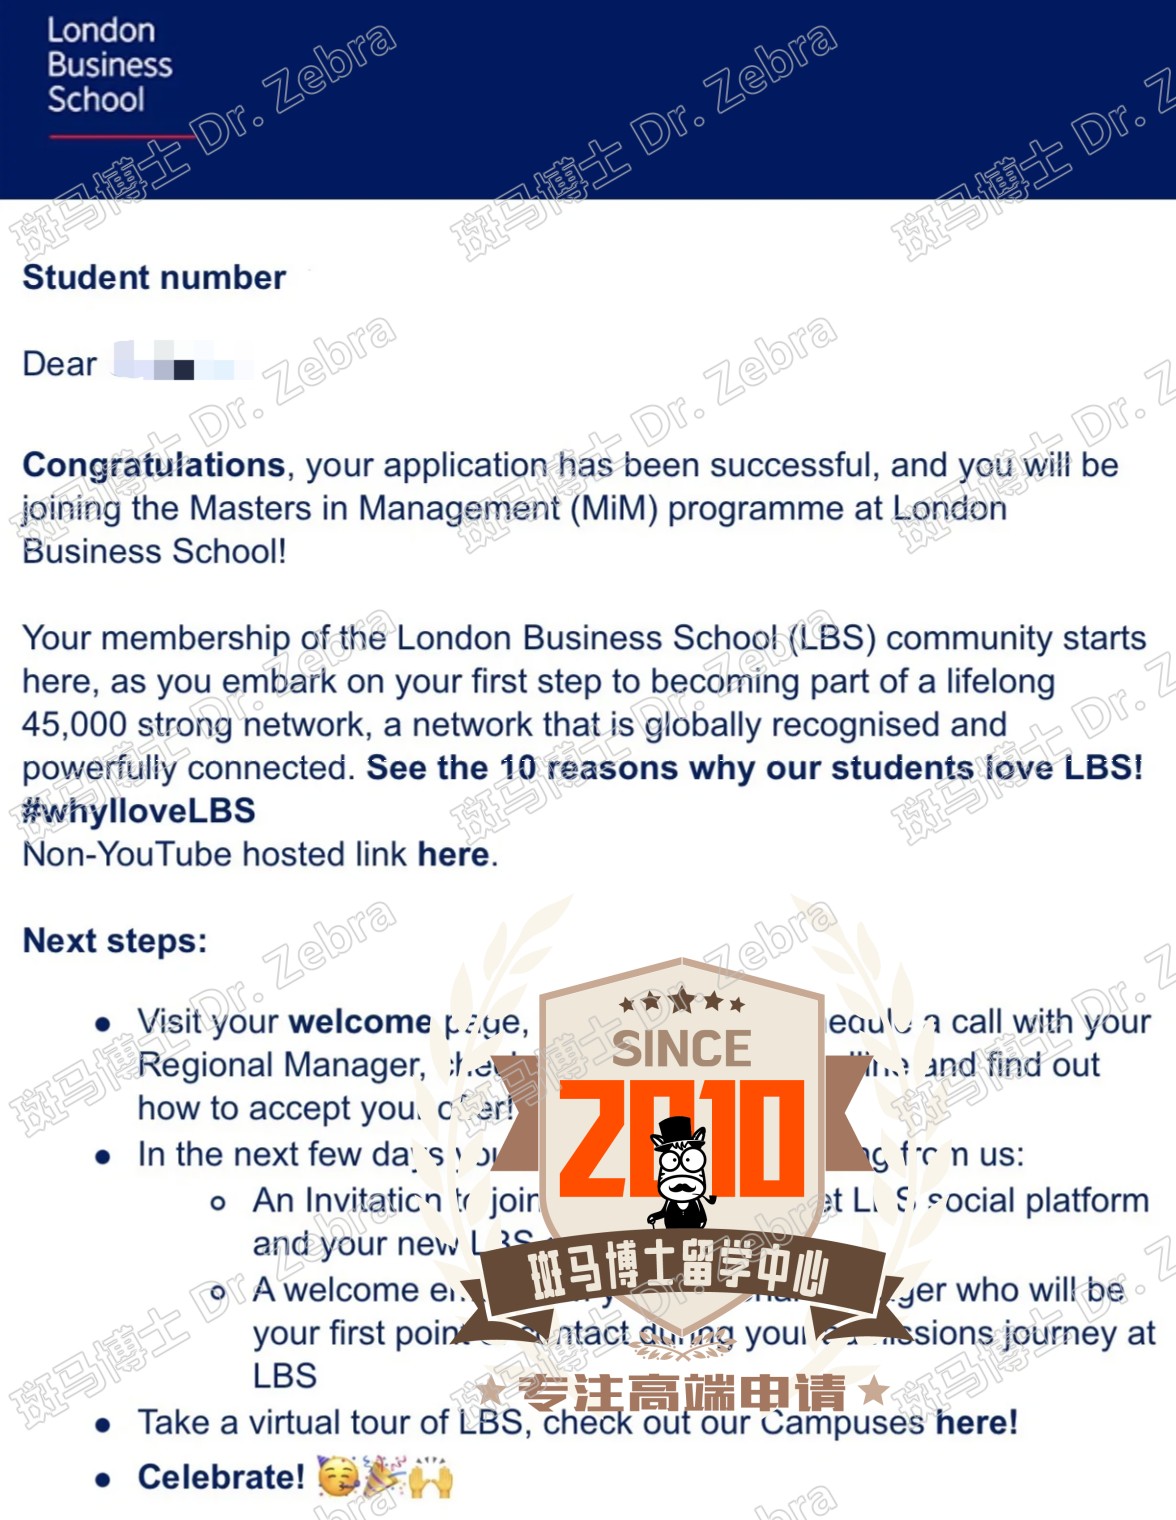 斑马博士，斑马博士留学中心，伦敦商学院， London Business School（LBS），Masters in Management（MiM），管理学硕士